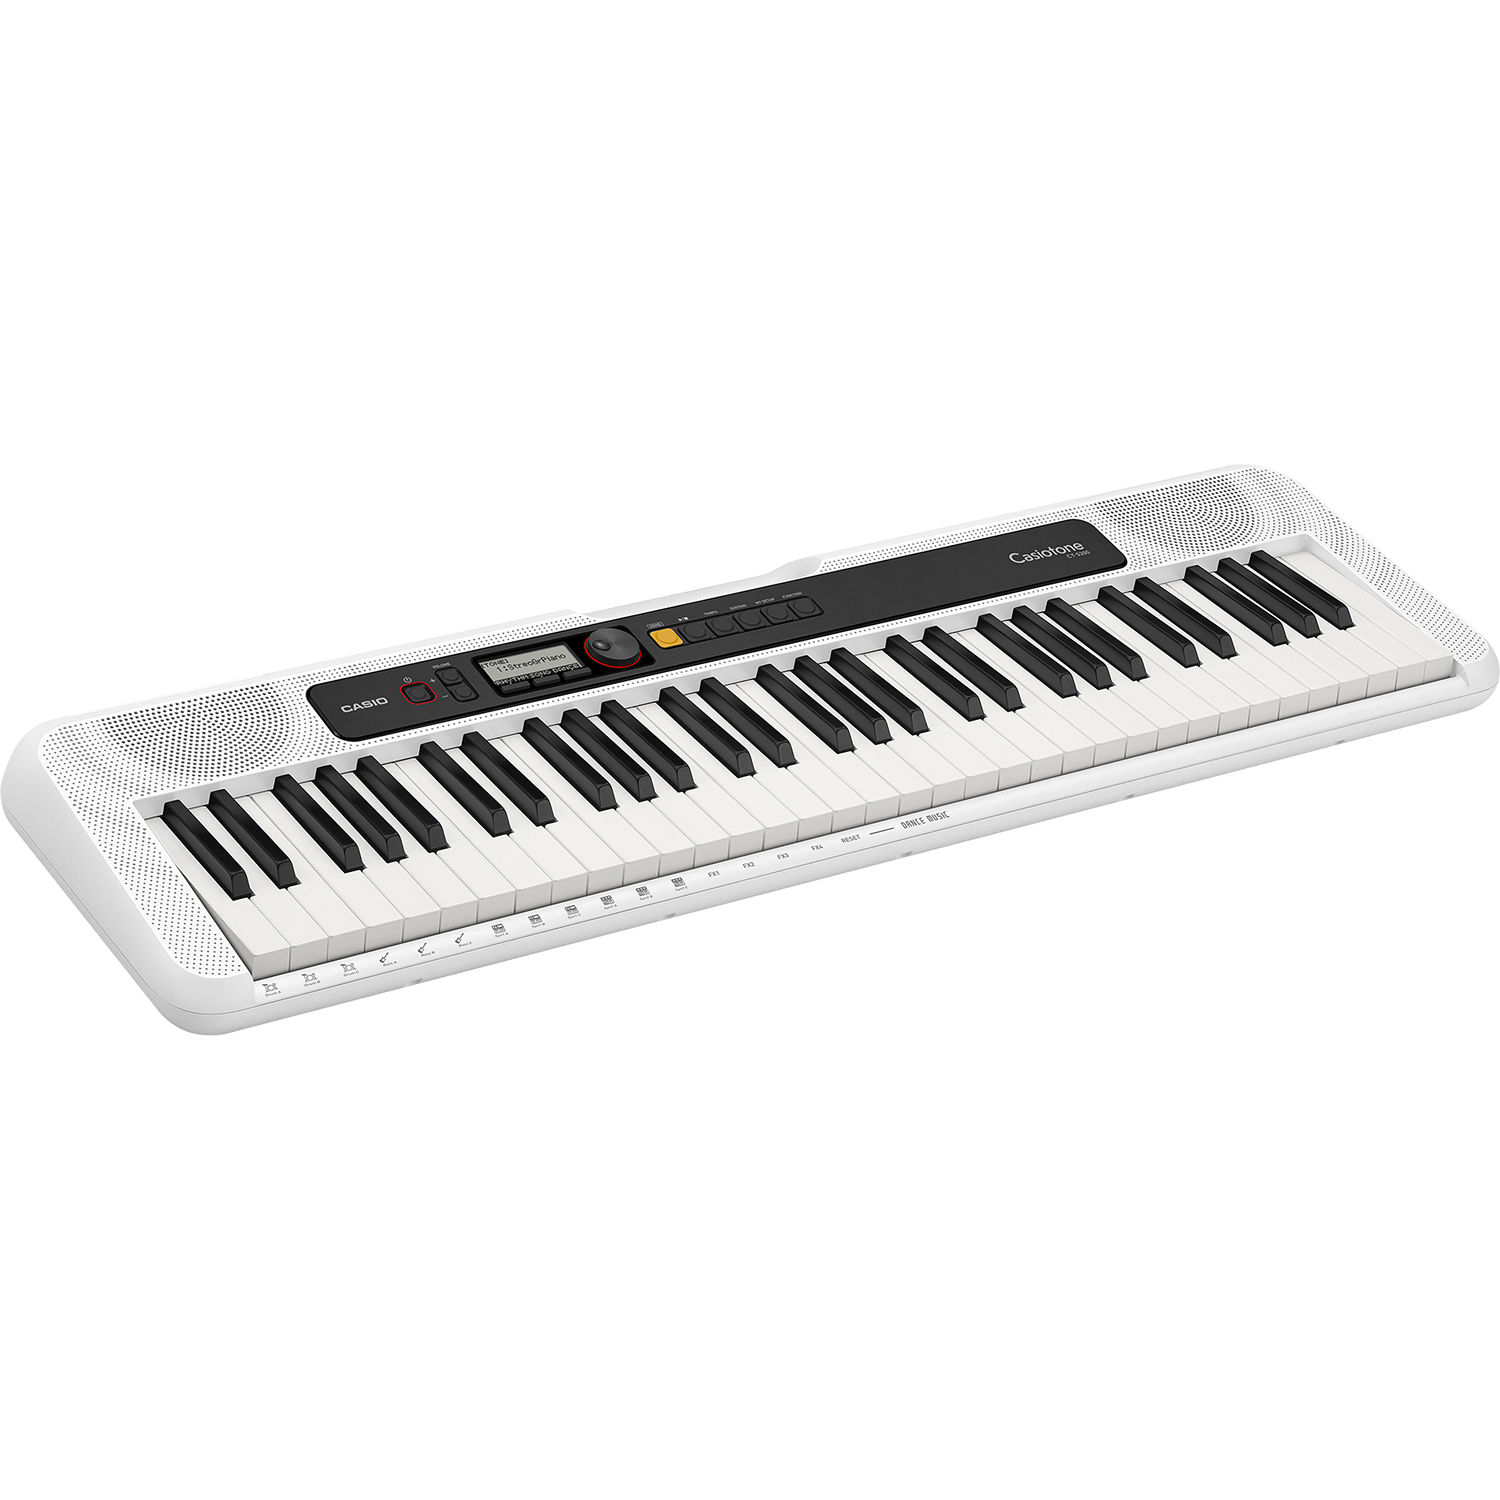 Casio piano keyboard sale